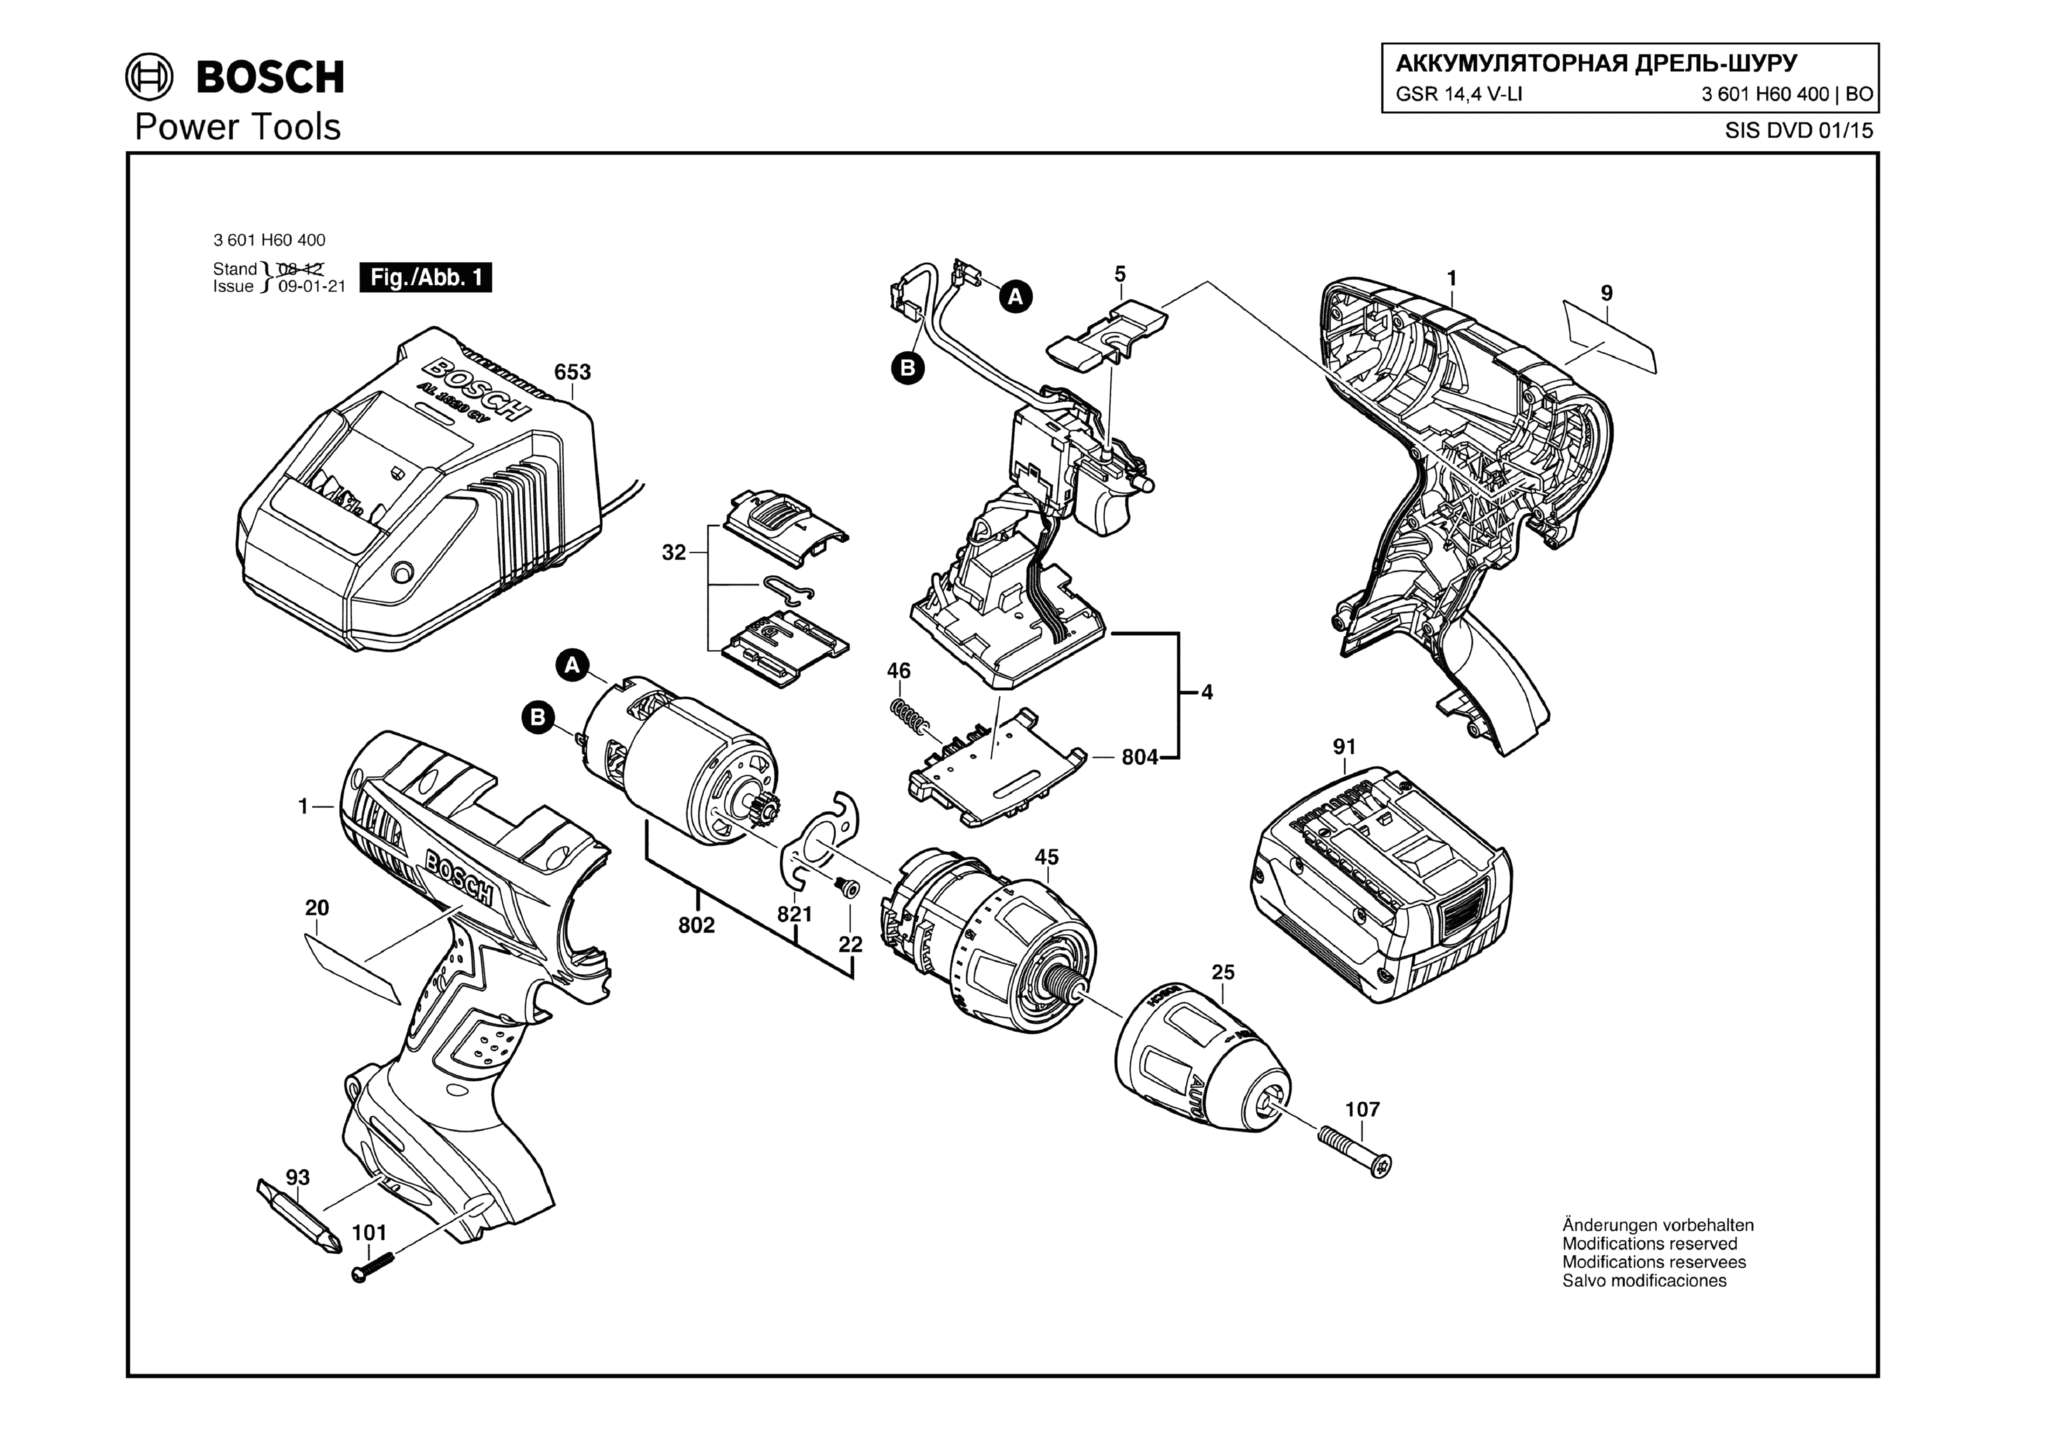 Запчасти, схема и деталировка Bosch GSR 14,4 V-LI (ТИП 3601H60400)